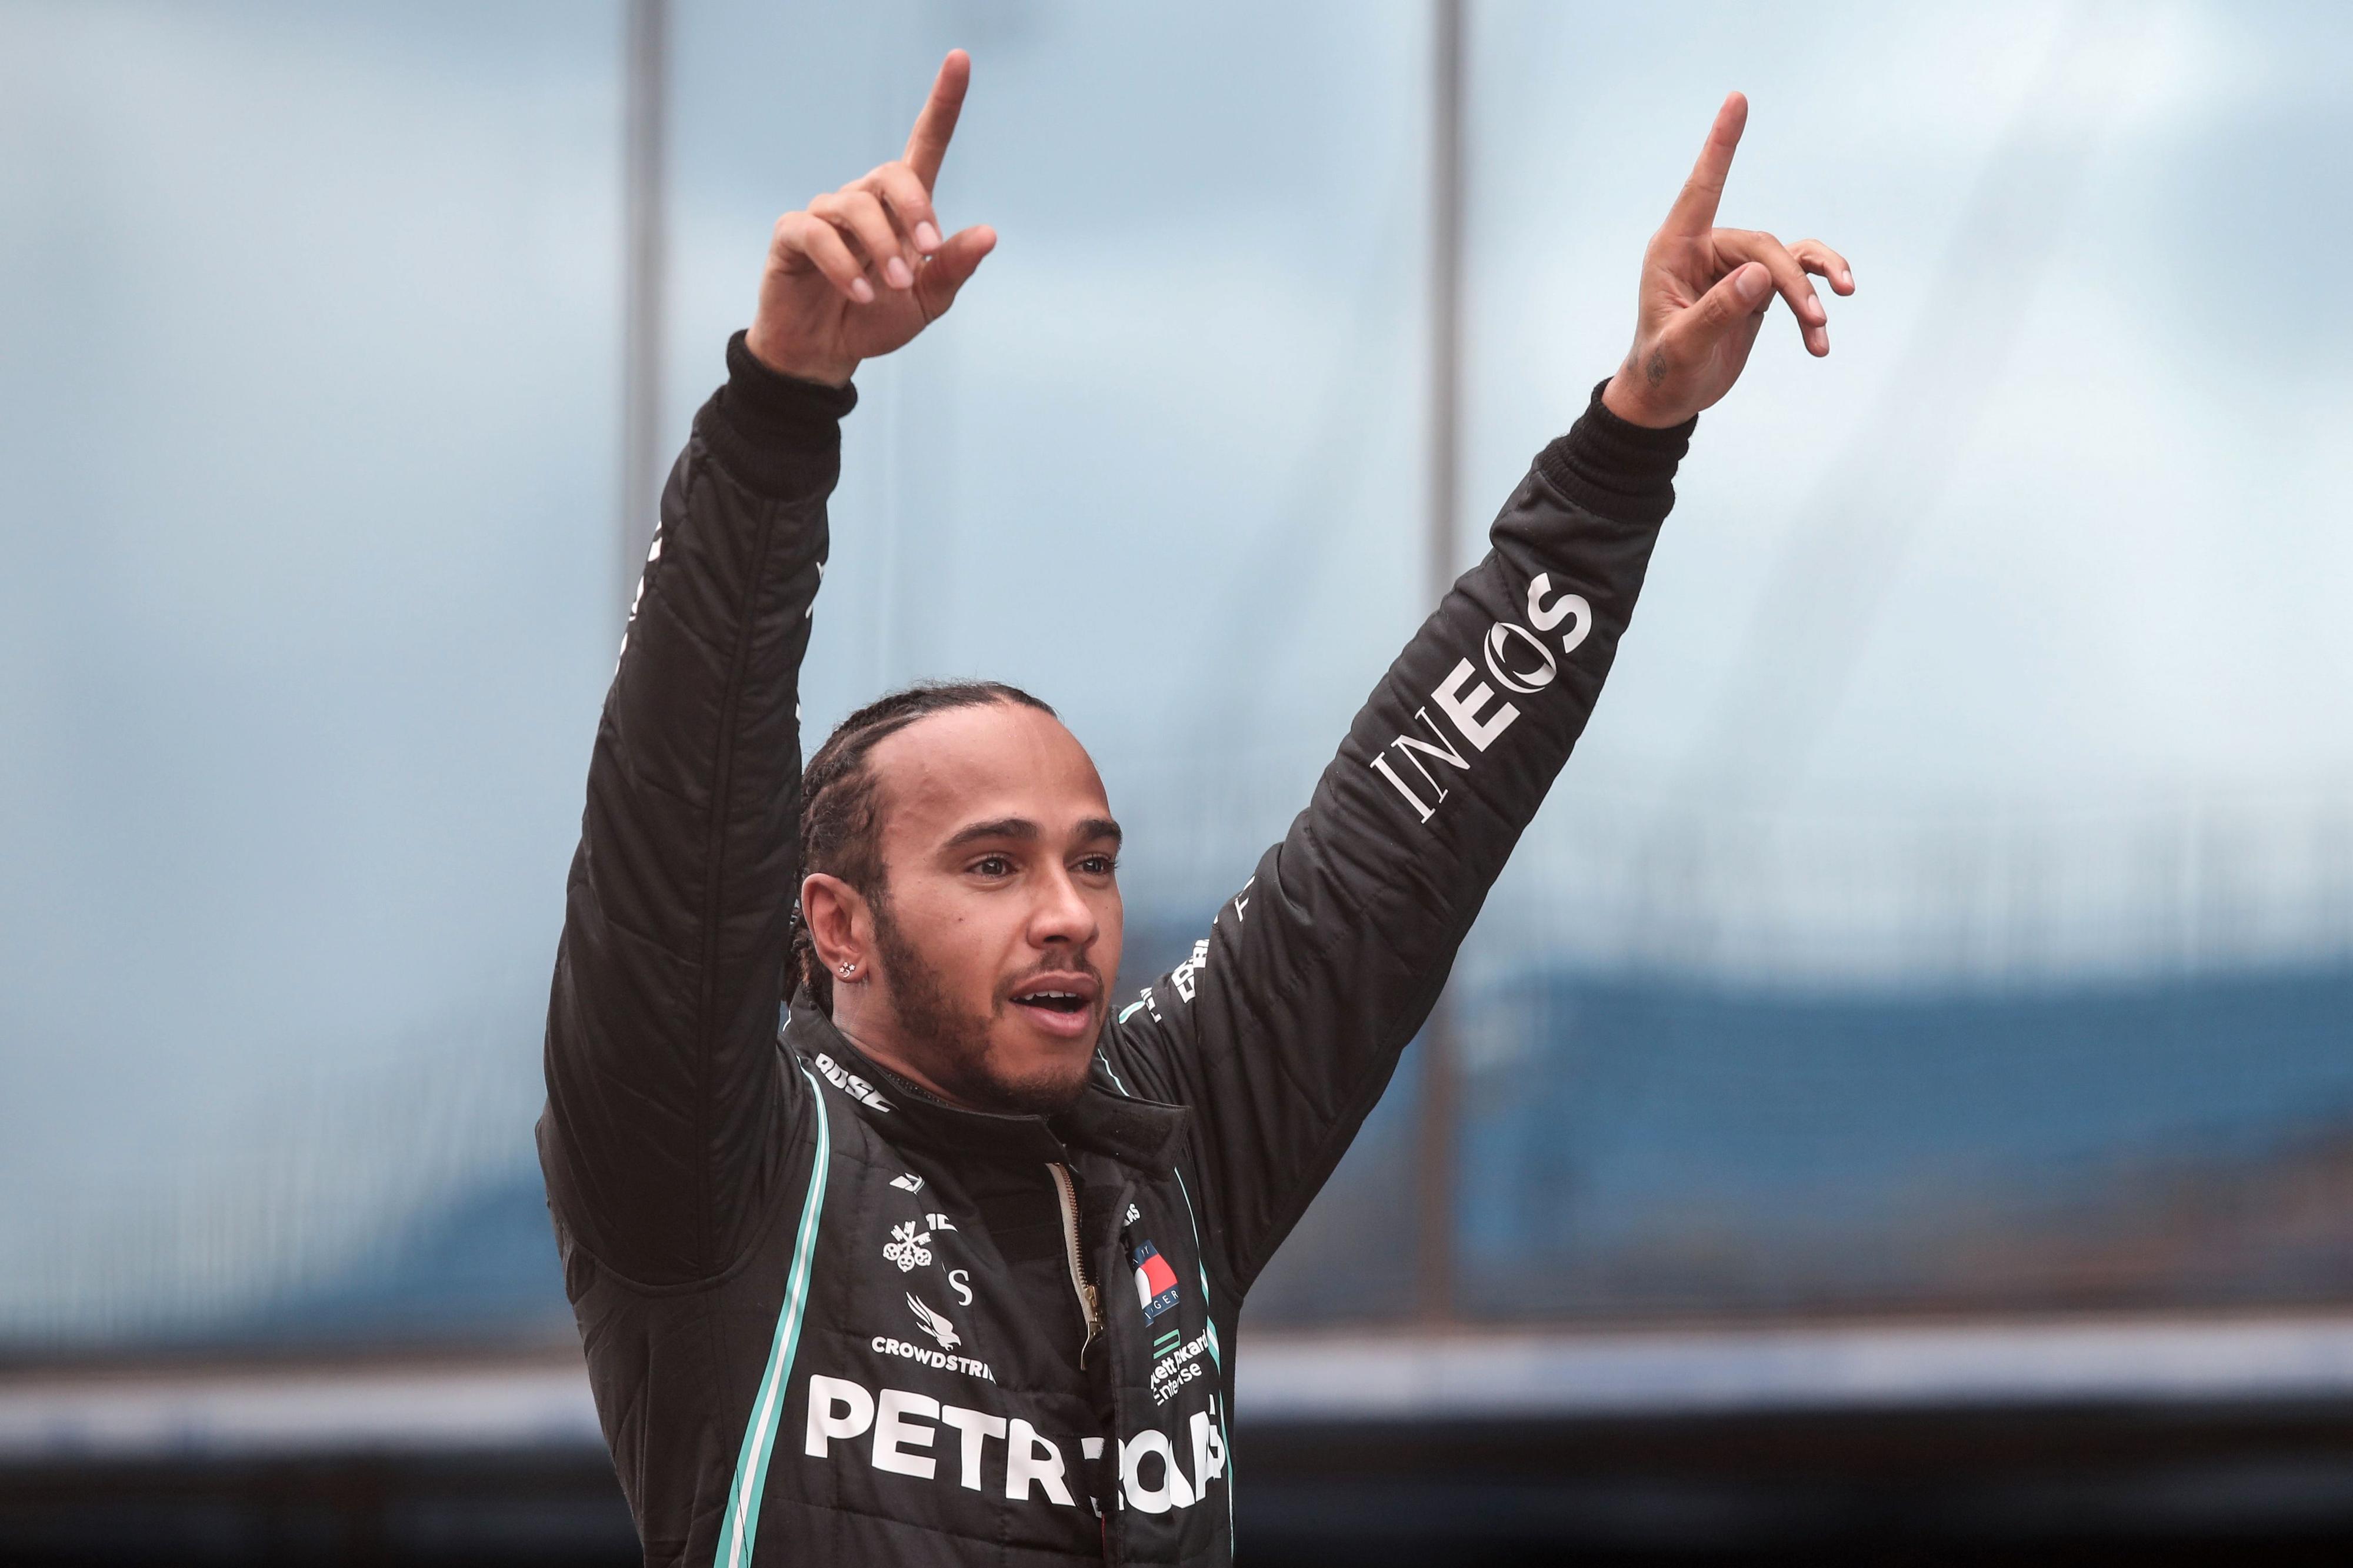 SLIK VI VANT TIL Å SE HAM: På jobb har Hamilton på seg racingdress, men før løp viser han gjerne frem sin personlige og særegne stil. 